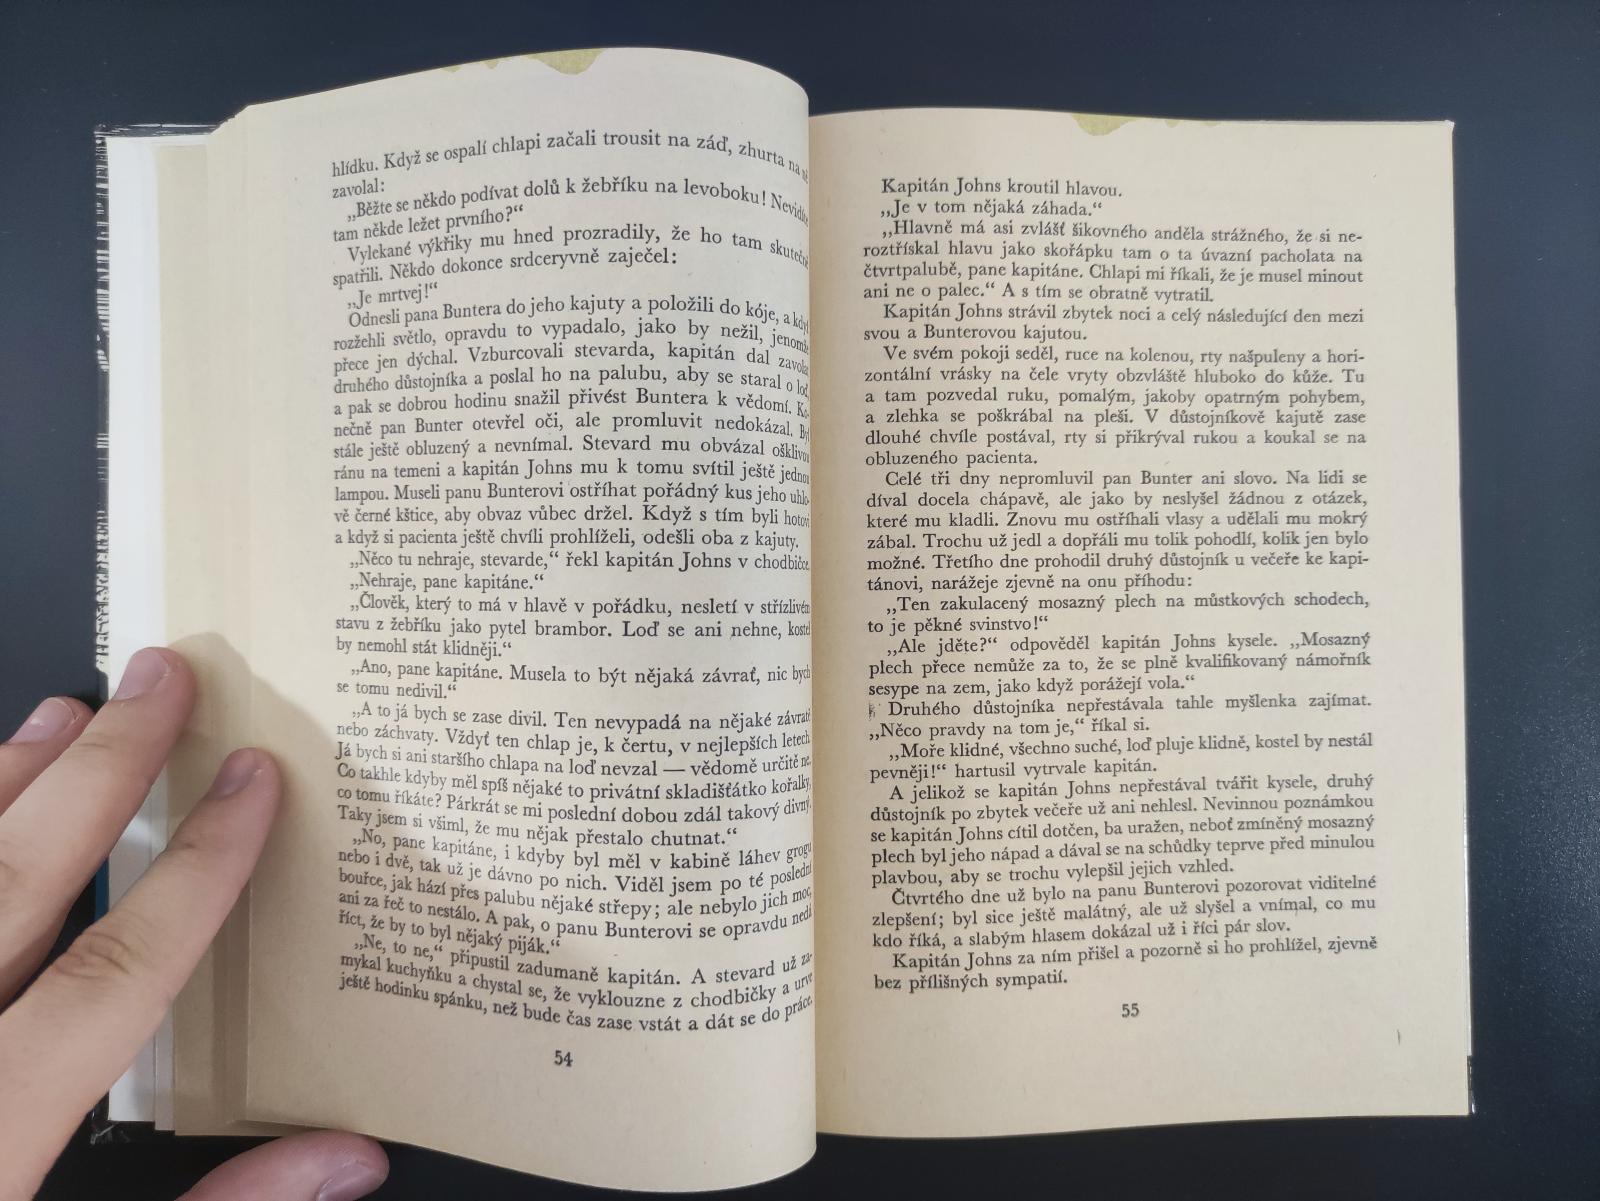 Tajfun a jiné povídky - Joseph Conrad | Albatros 1976 - Knihy a časopisy